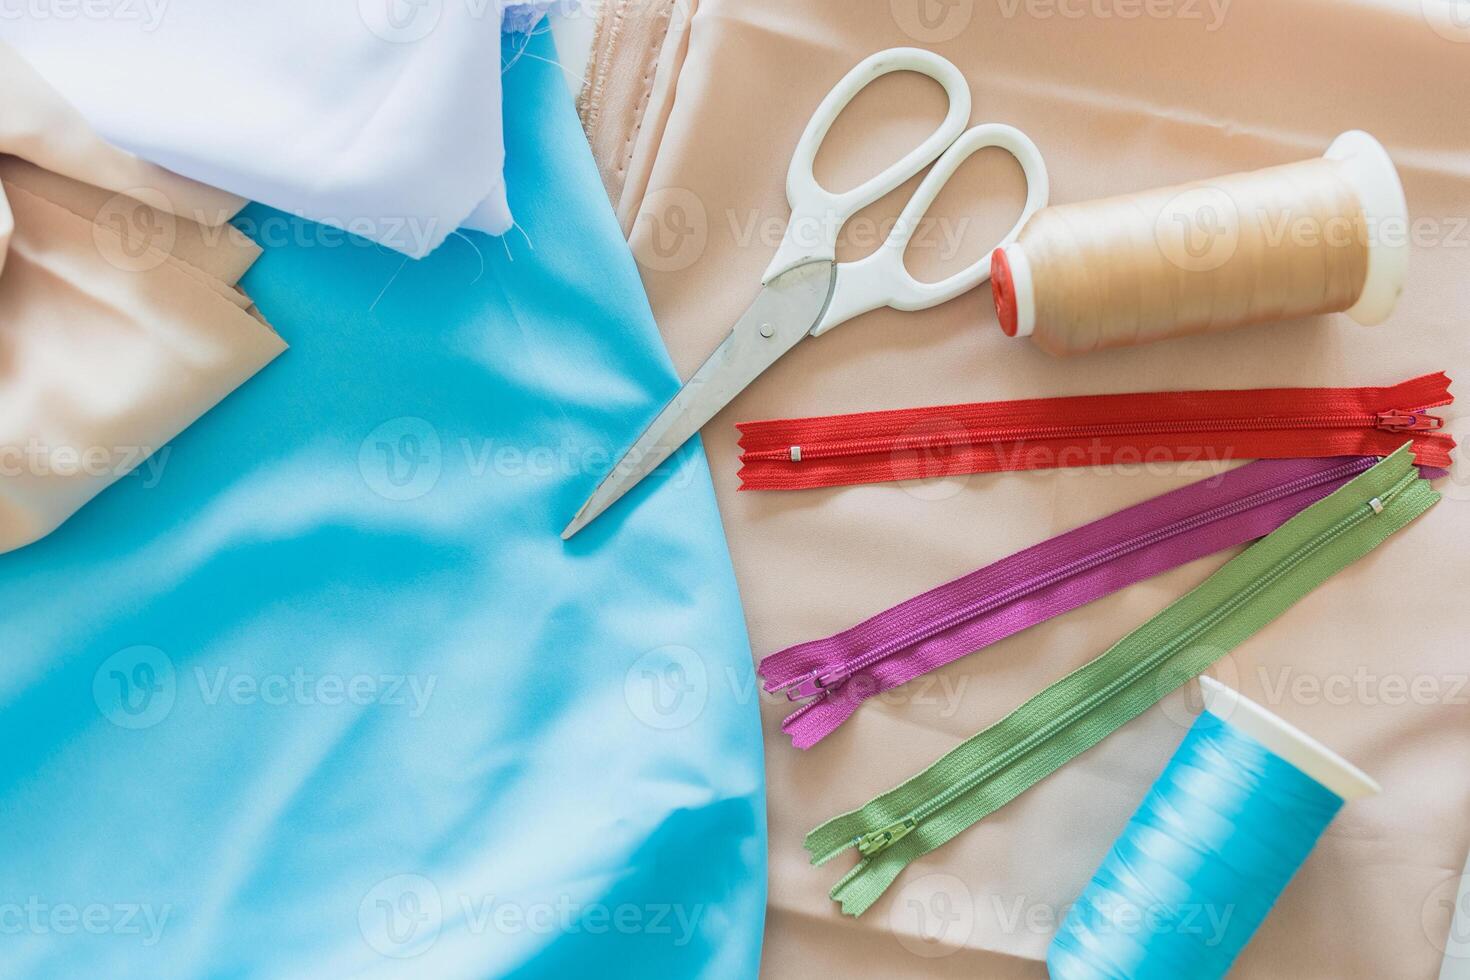 kleurrijk ritsen schaar en spoelen van draad leggen Aan stoffen textiel kleding voor kleermaker uitrusting decoratie concept foto